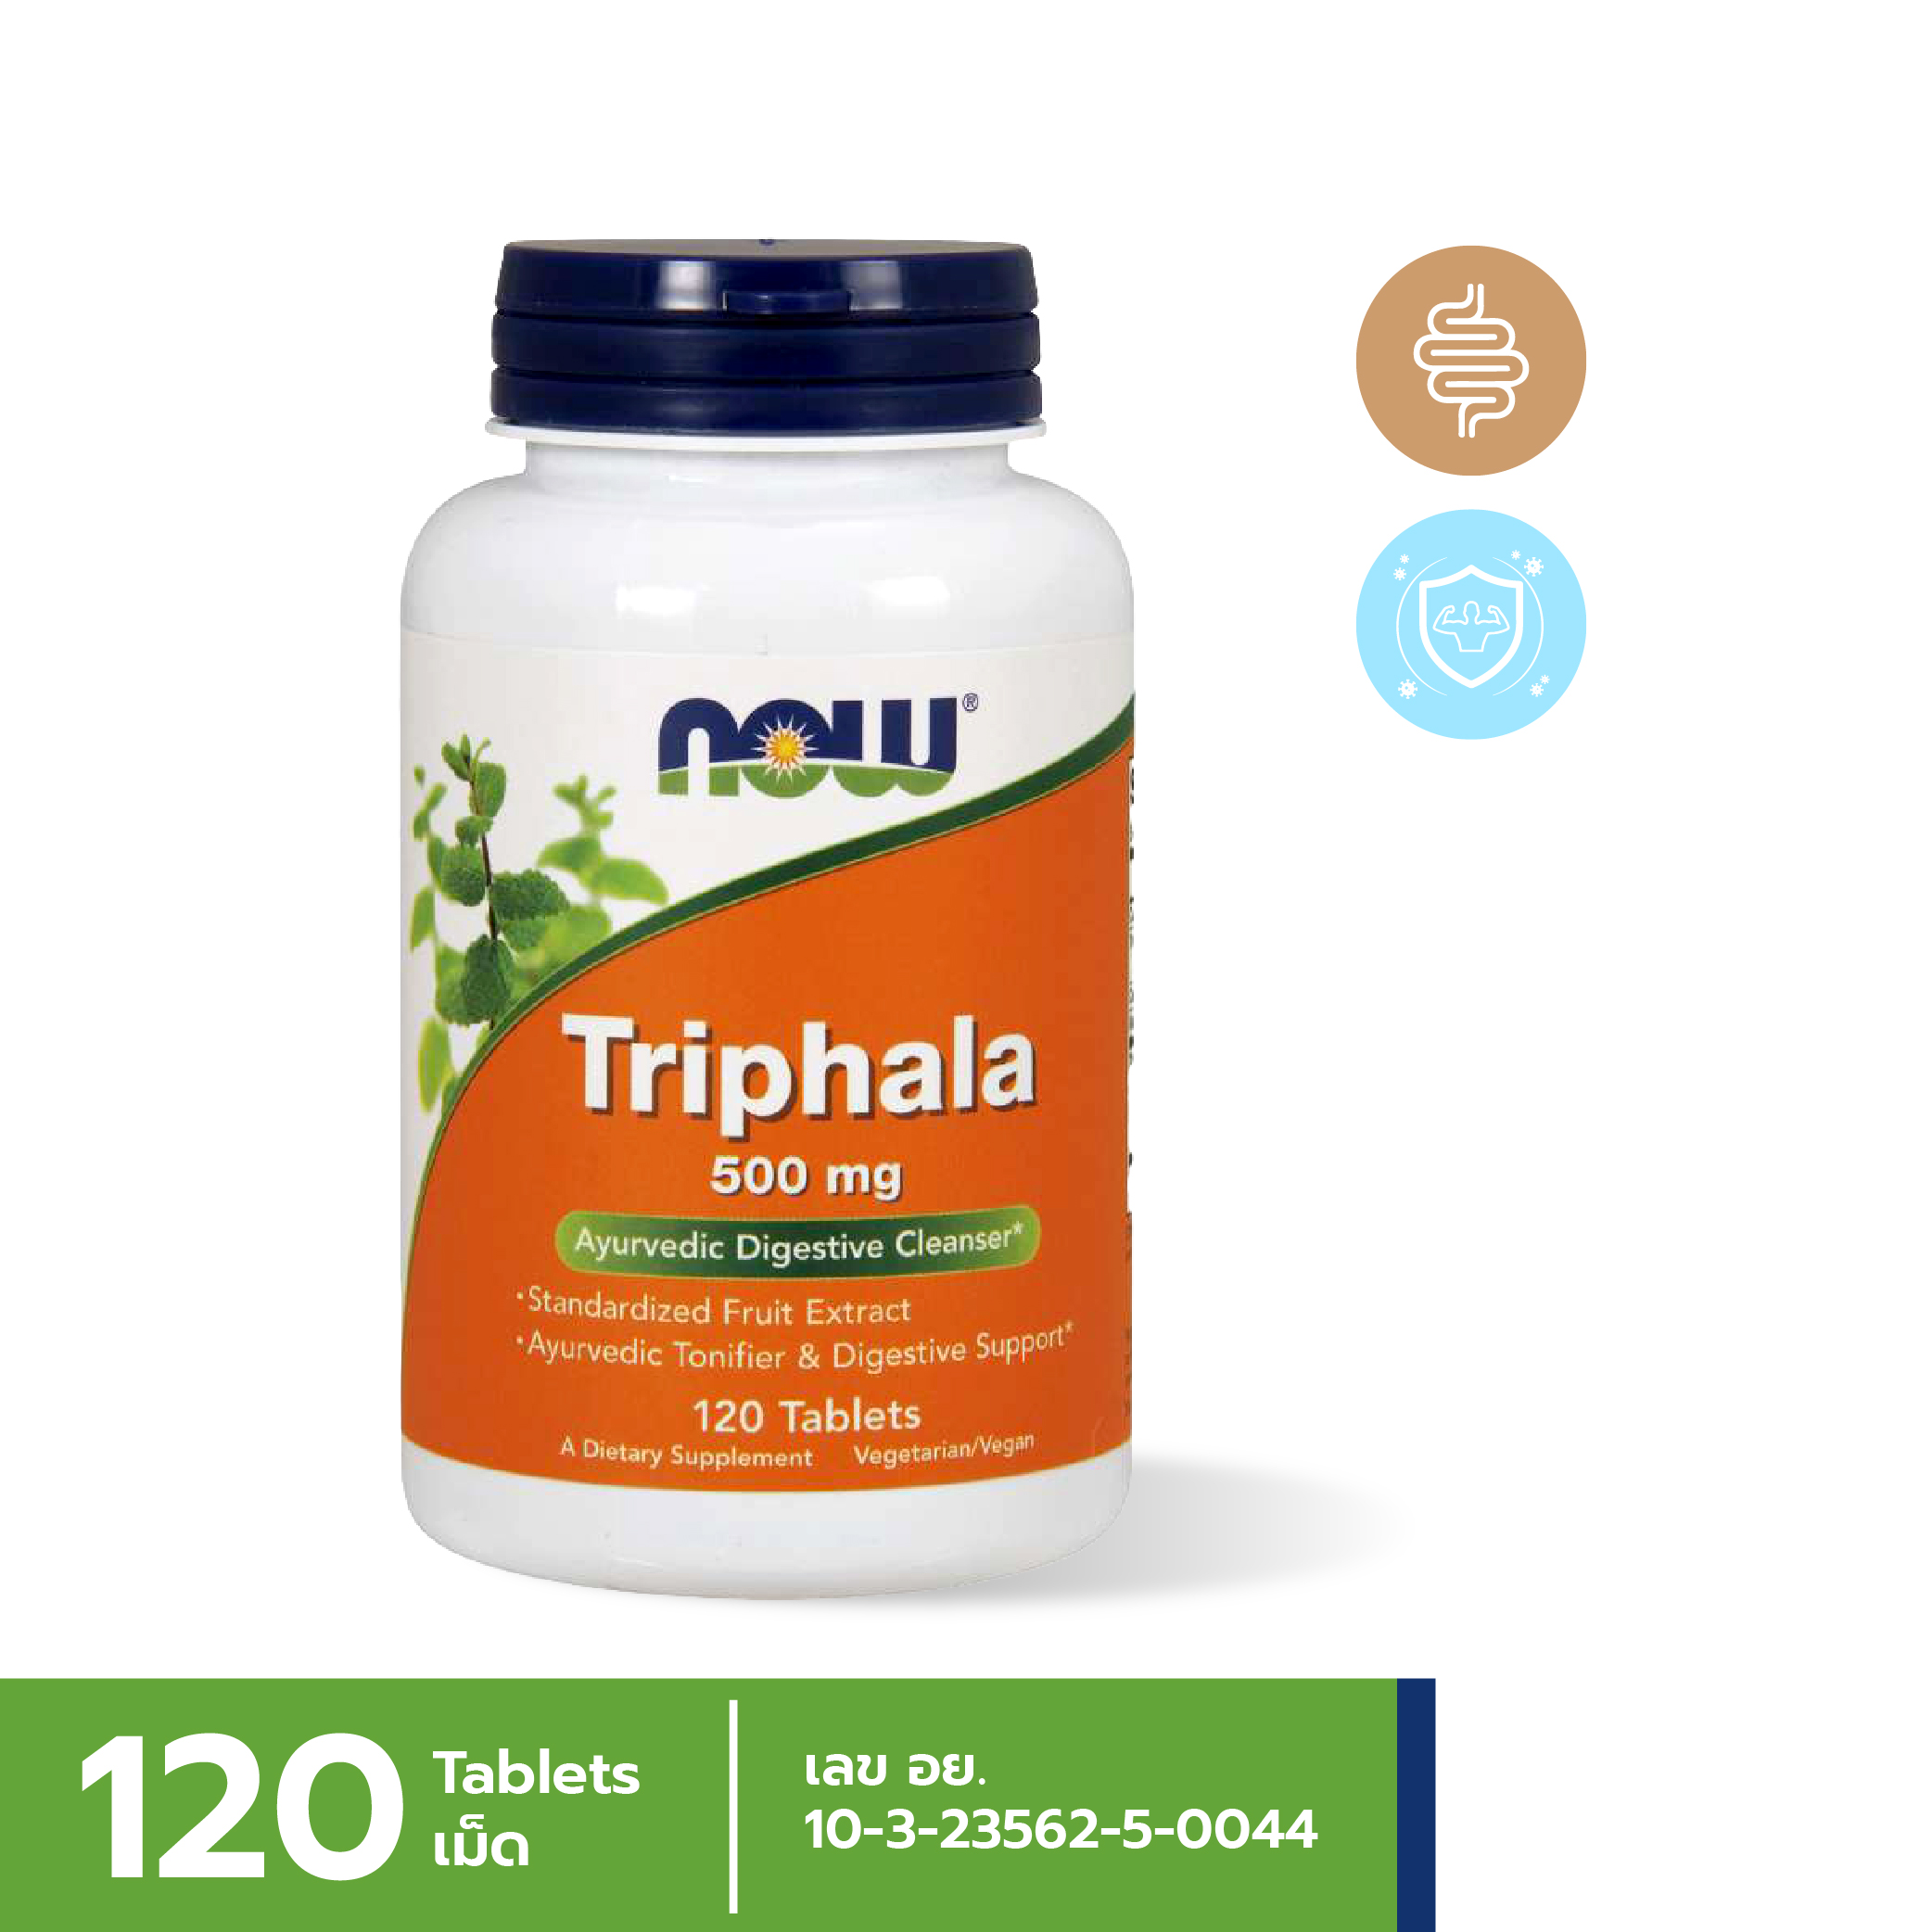 [ลูกค้าใหม่กรอก FORYOU89 ลดเลย 89.-] NOW Triphala 500 mg (120 Tablets)